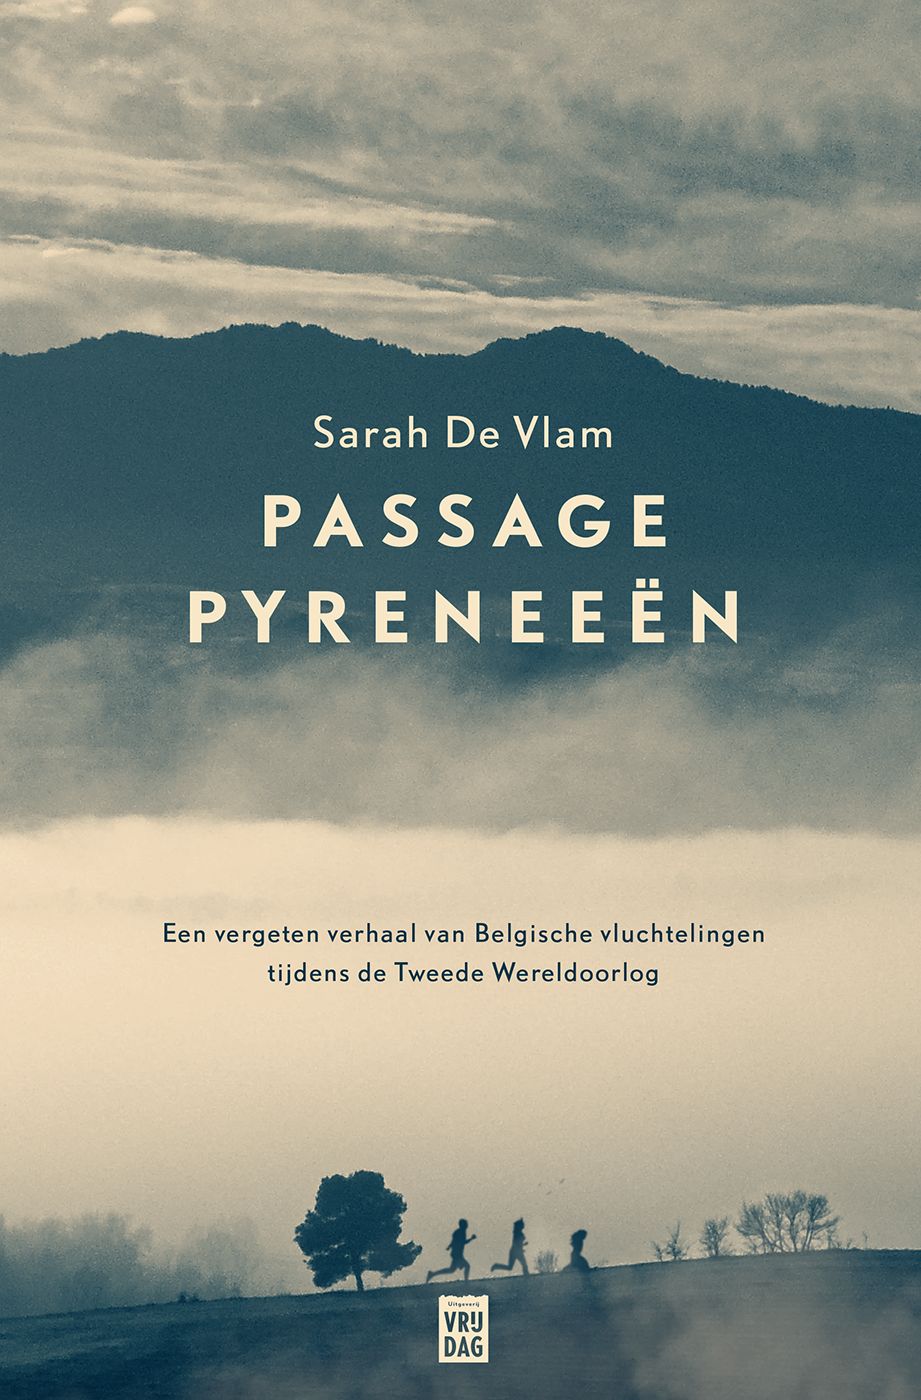 Vlam, Sarah de - Passage Pyreneeën